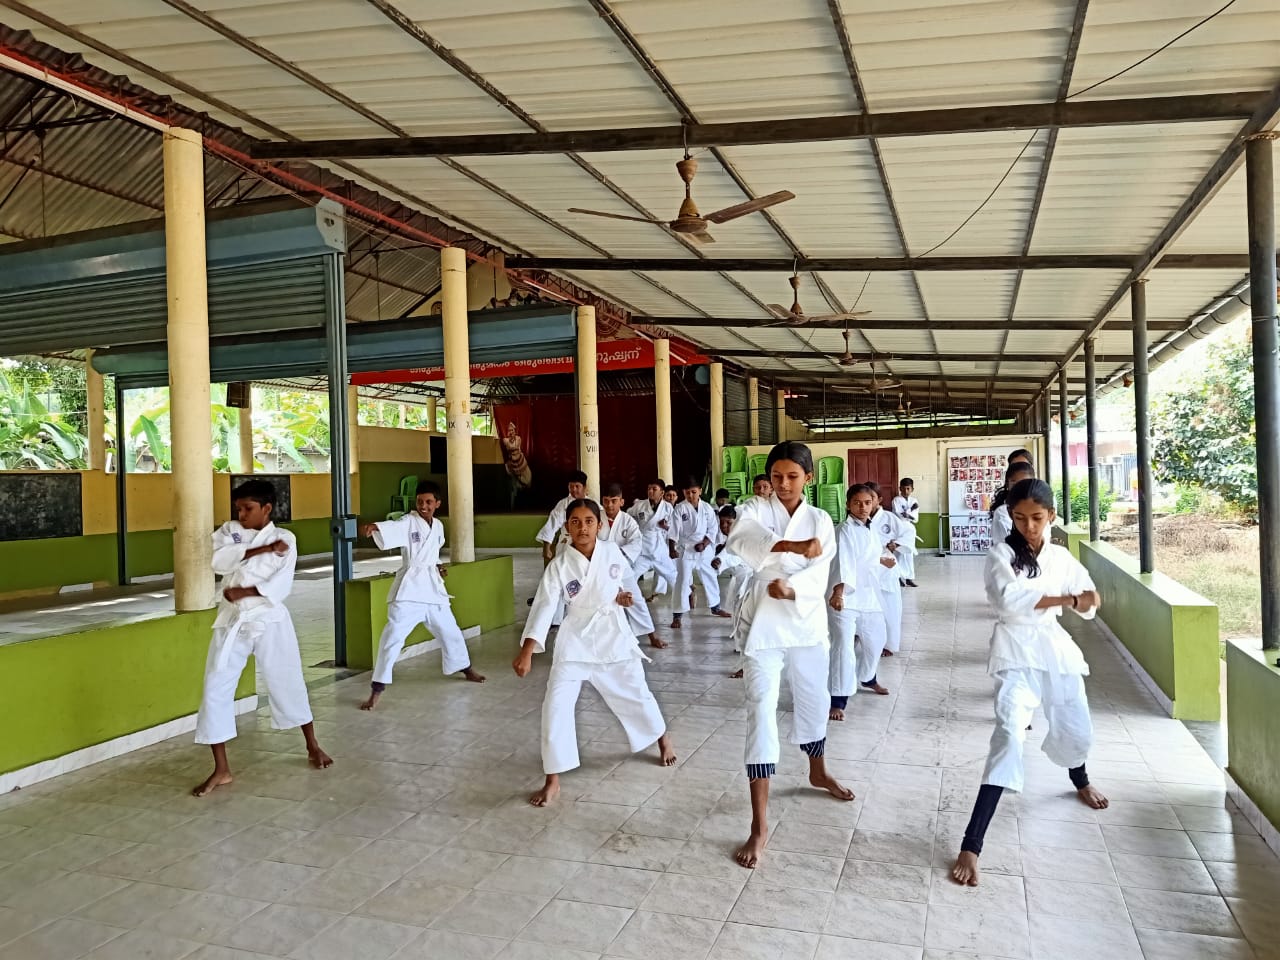 Karate Team